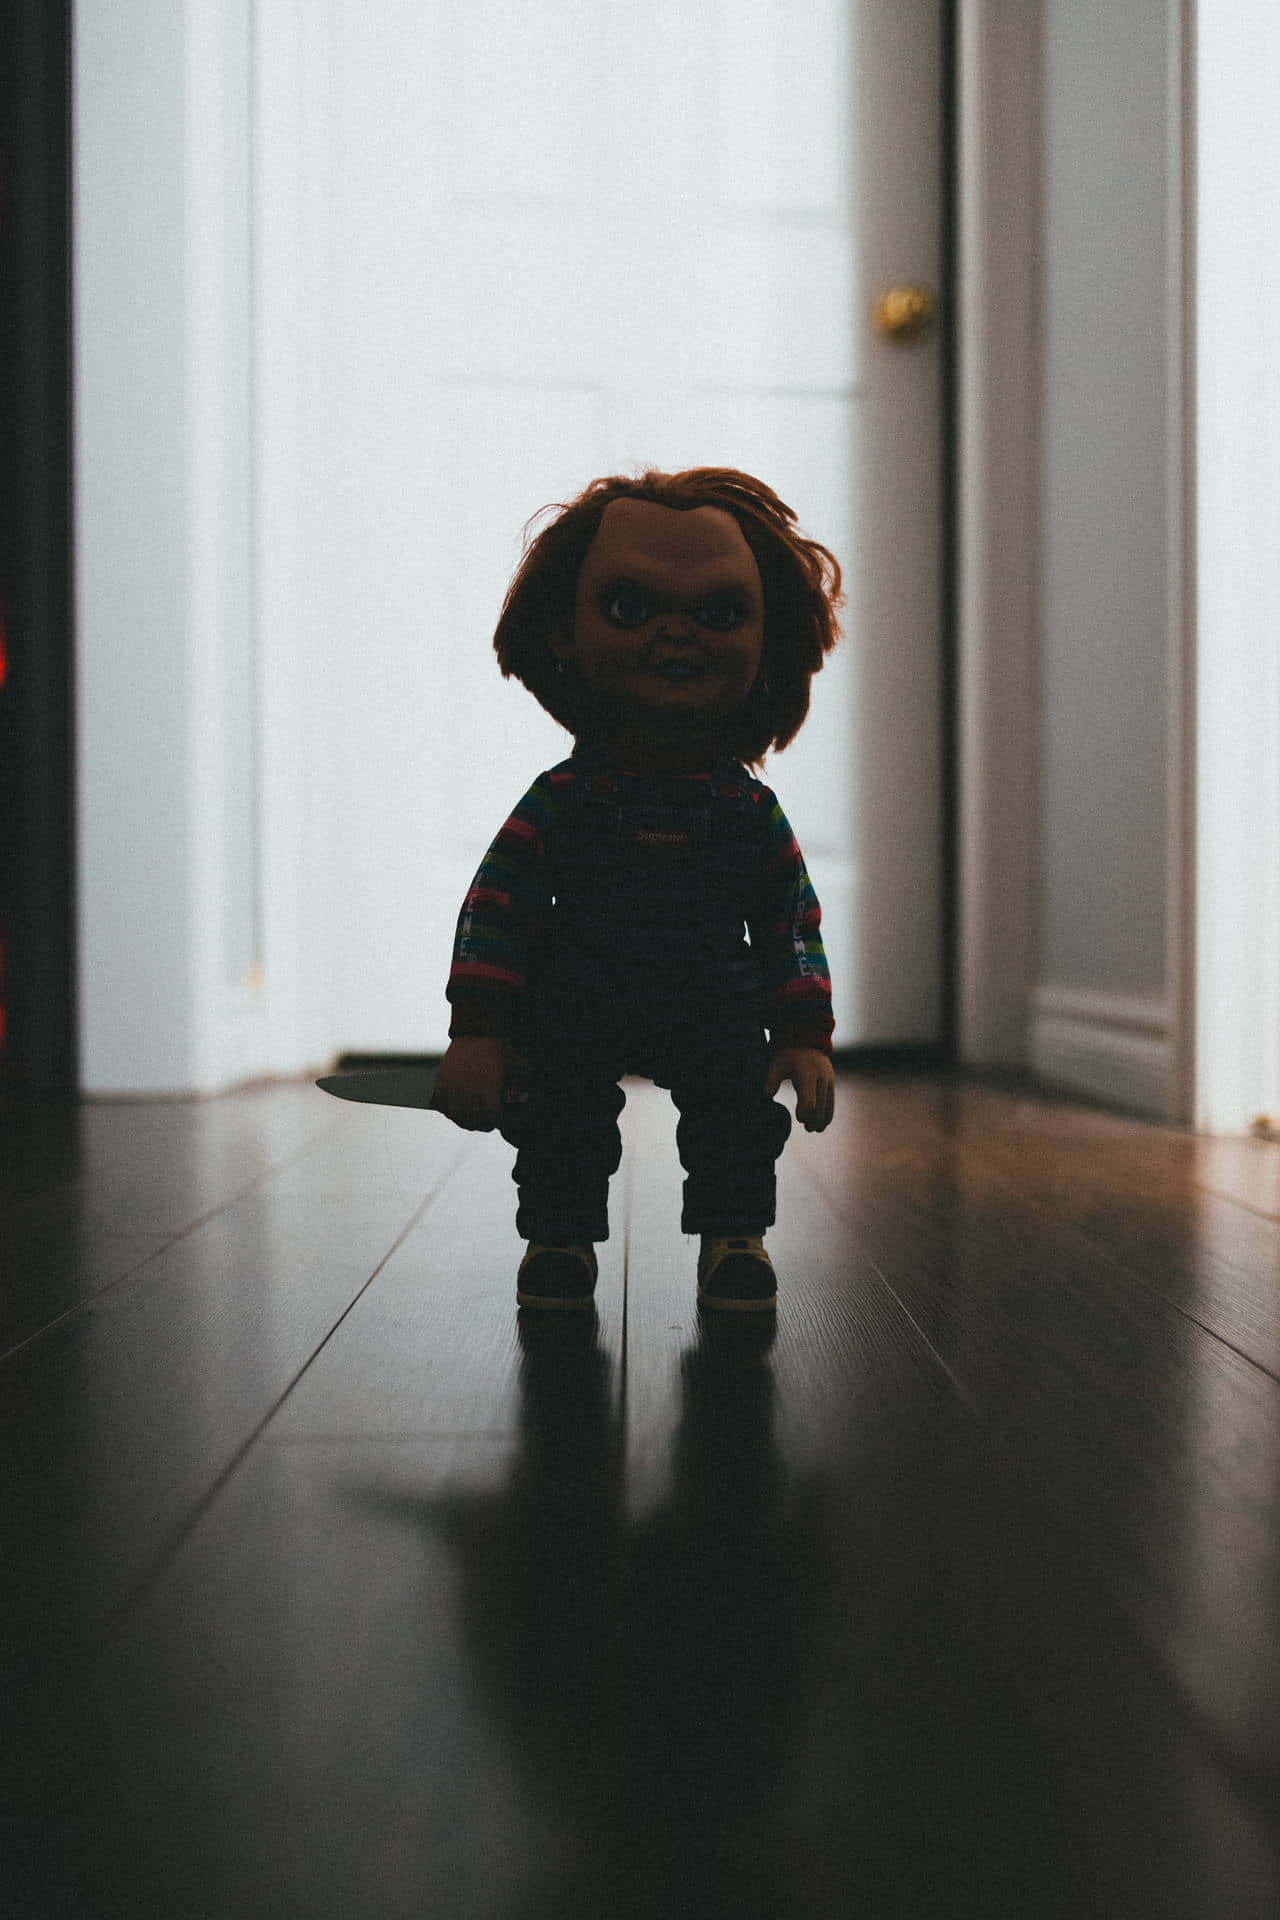 “The Mischievous Puppet, Chucky”